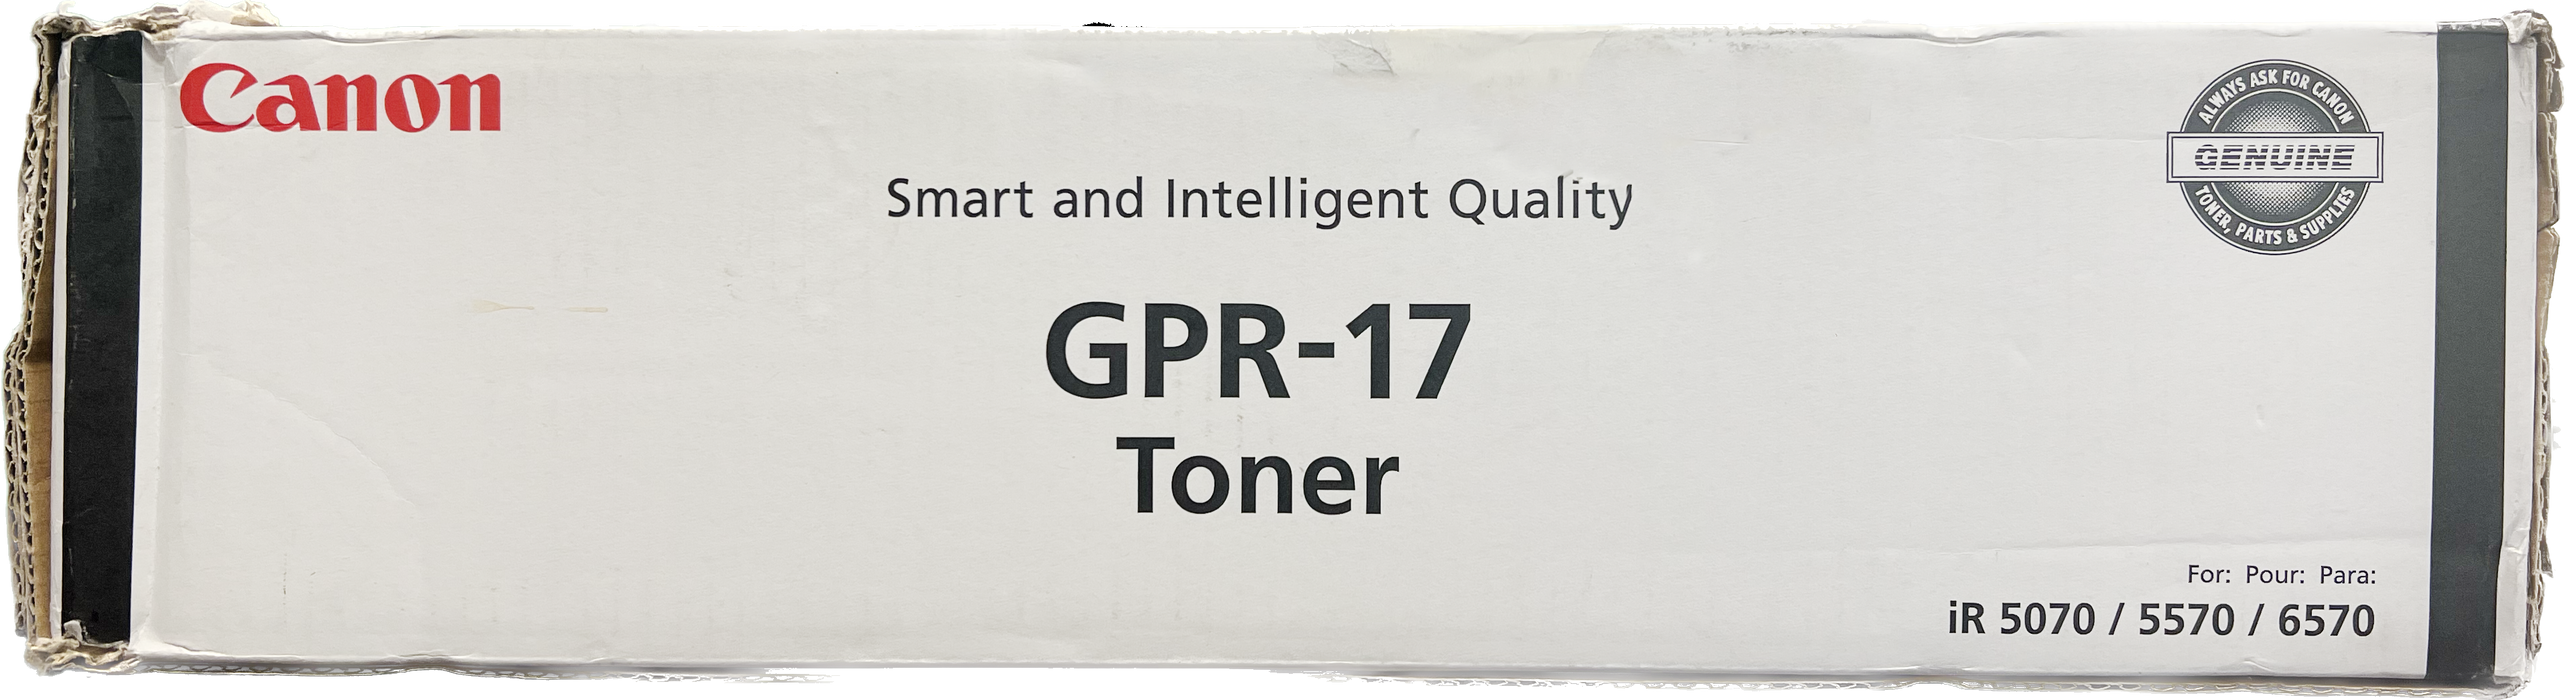 Genuine Canon Black Toner Cartridge | 0279B003 | GPR-17K